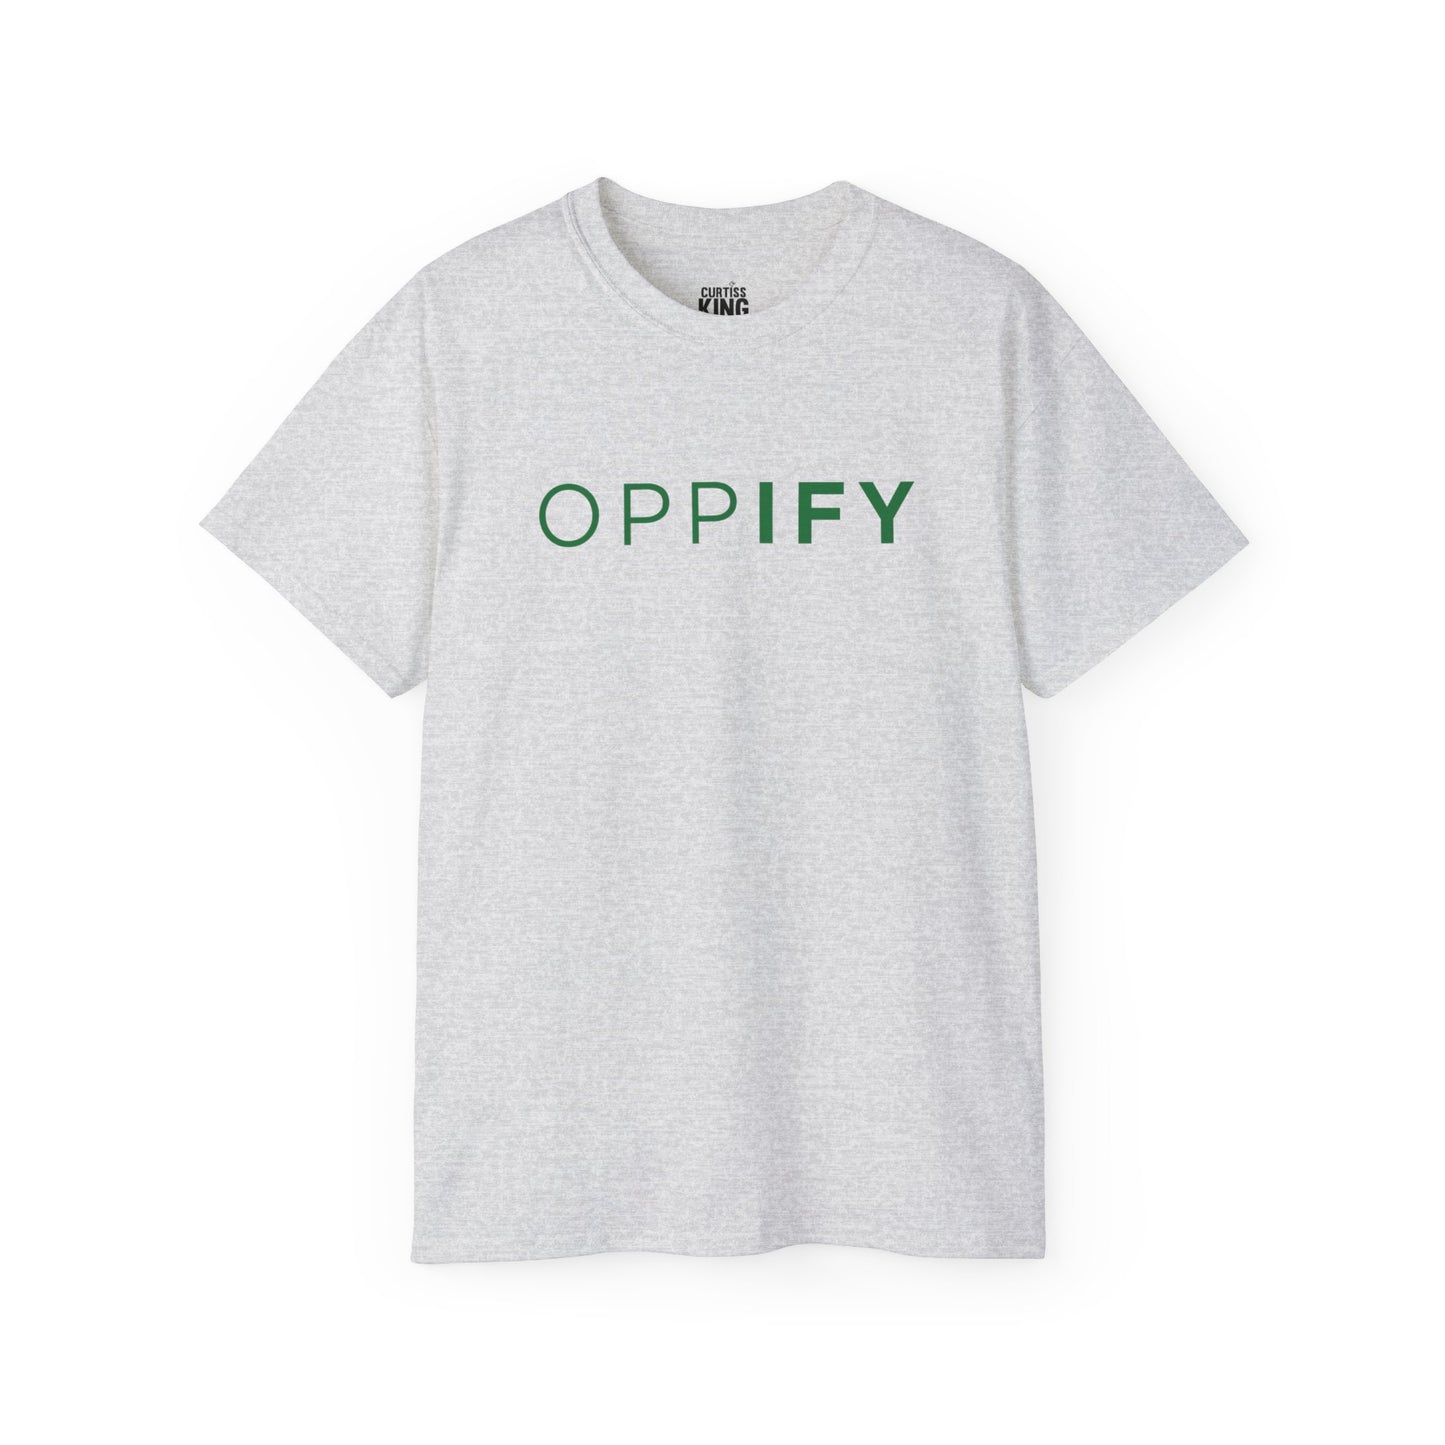 OPPify [Light Mode]